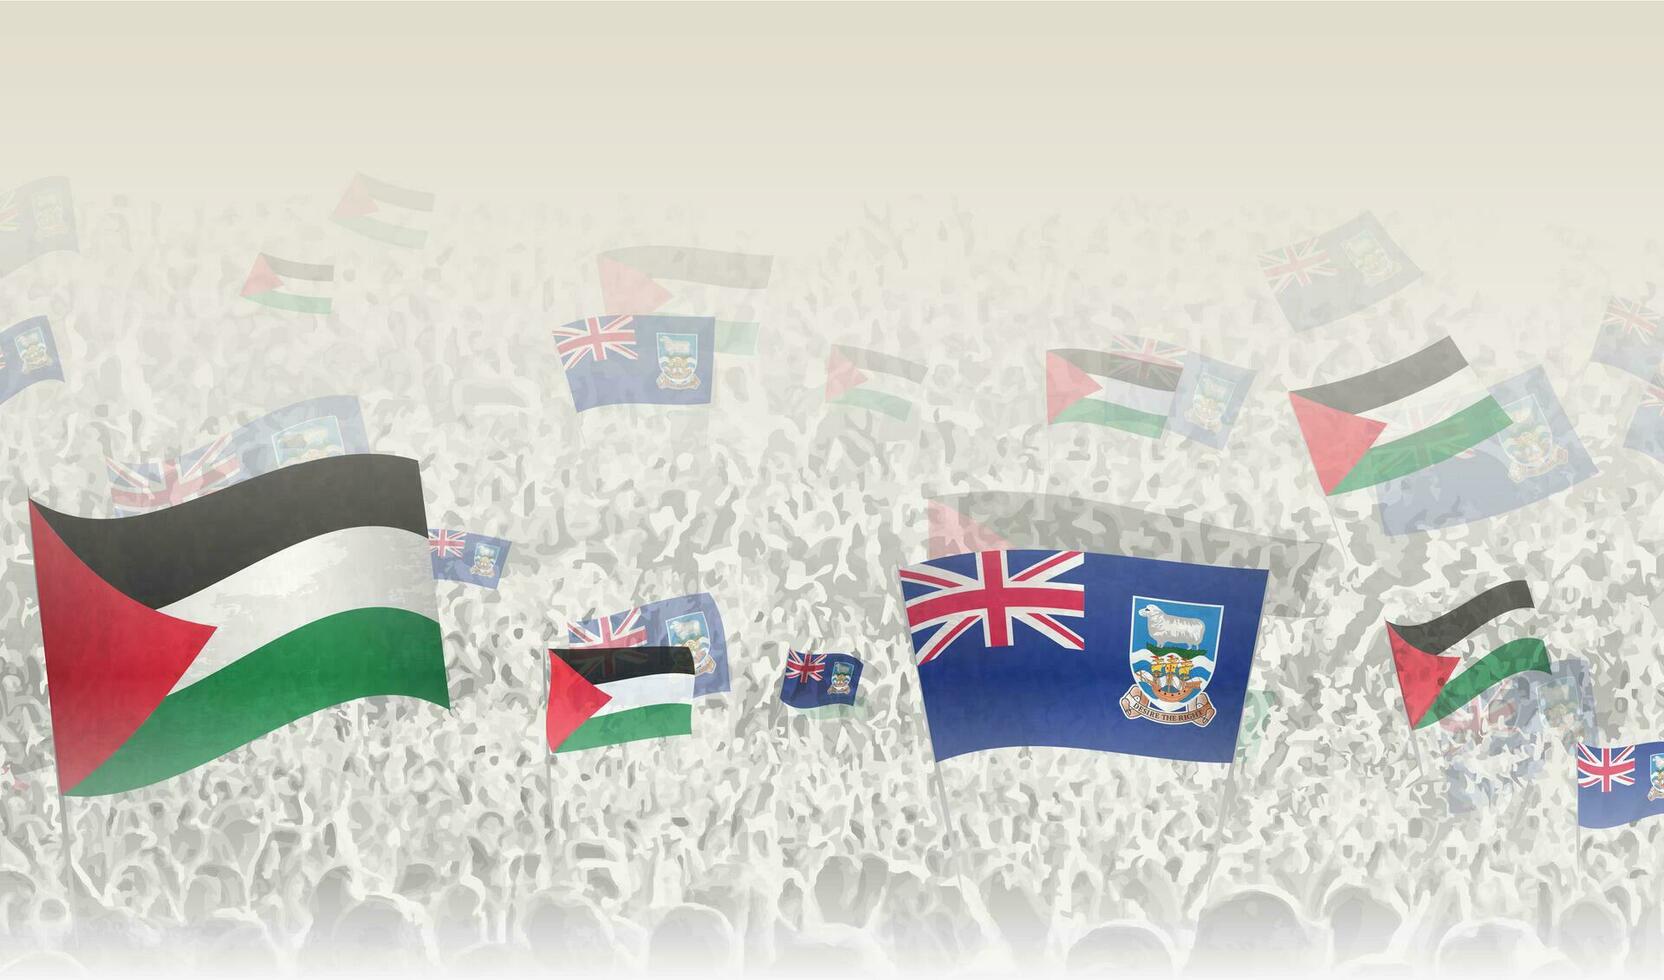 Palestine et Falkland îles drapeaux dans une foule de applaudissement personnes. vecteur